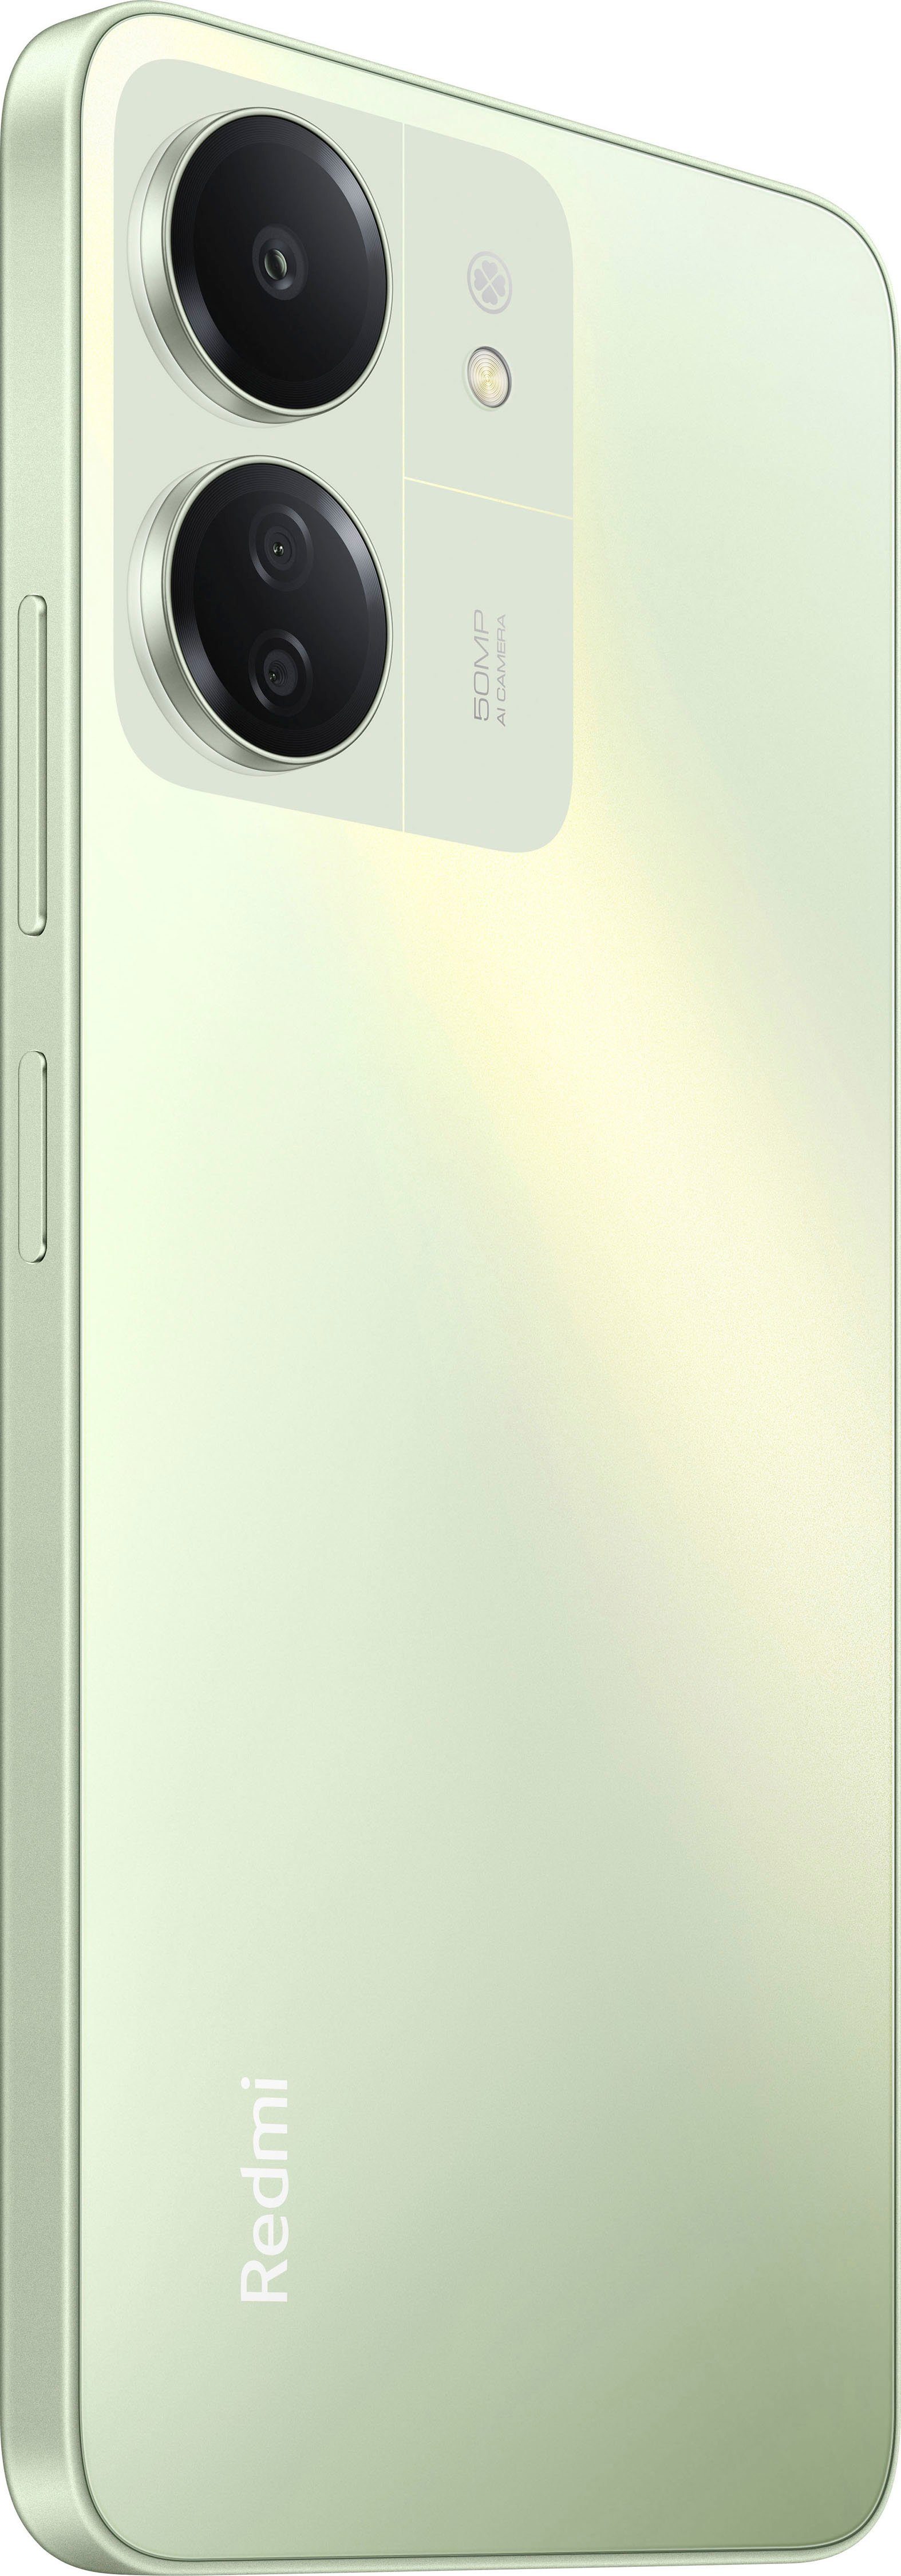 Hellgrün 8GB+256GB cm/6,74 (17,1 Zoll, Speicherplatz, 13C 50 GB Redmi Kamera) Xiaomi 256 MP Smartphone